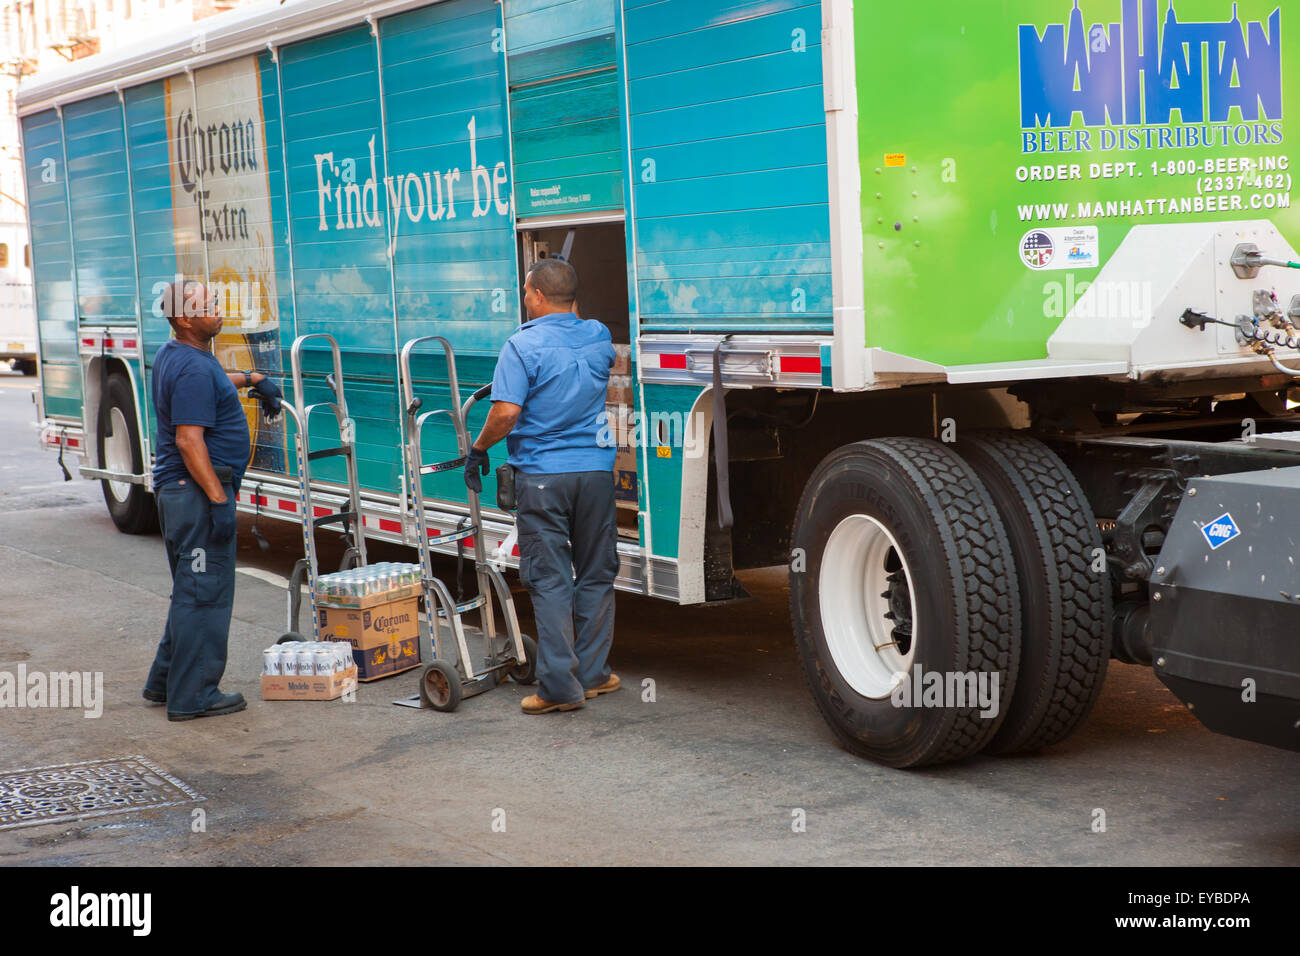 Deux hommes se décharger d'une bière La bière boisson Manhattan Distributeurs camion faire une livraison à Hamilton Heights à New York. Banque D'Images